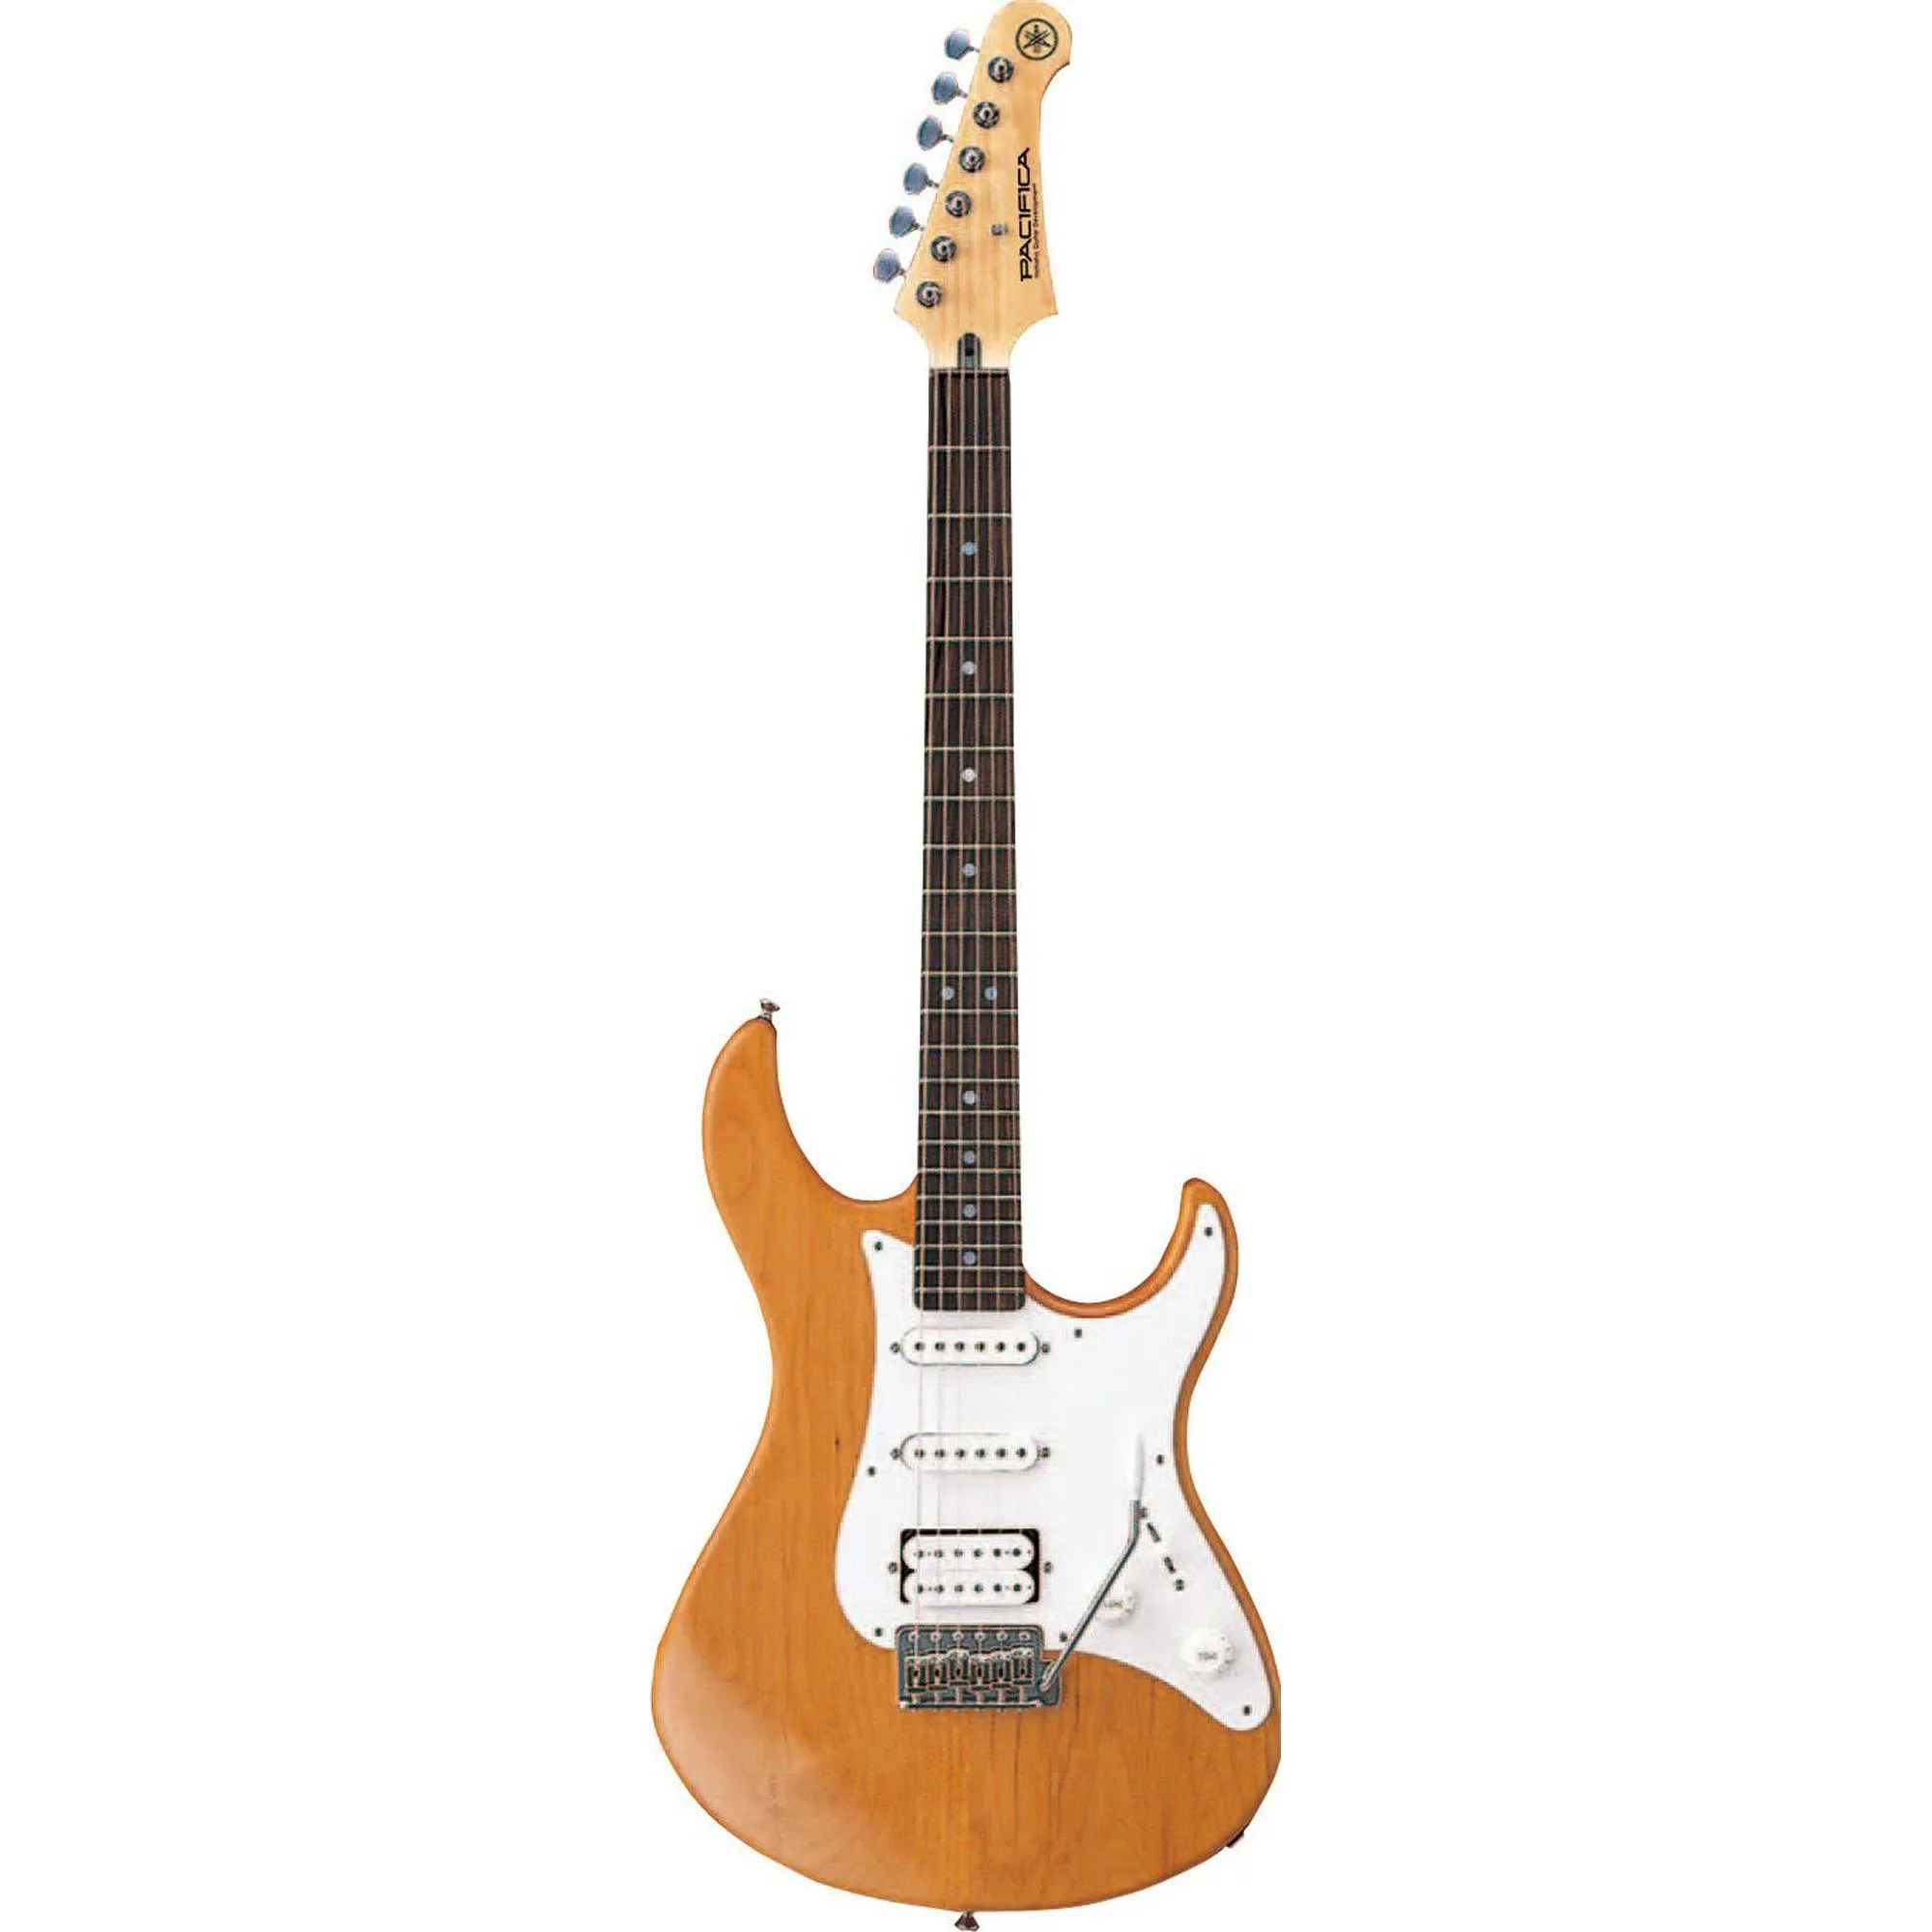 Guitarra Yamaha Pacífica 112J Yellow Natural Satin por 0,00 à vista no boleto/pix ou parcele em até 1x sem juros. Compre na loja Mundomax!